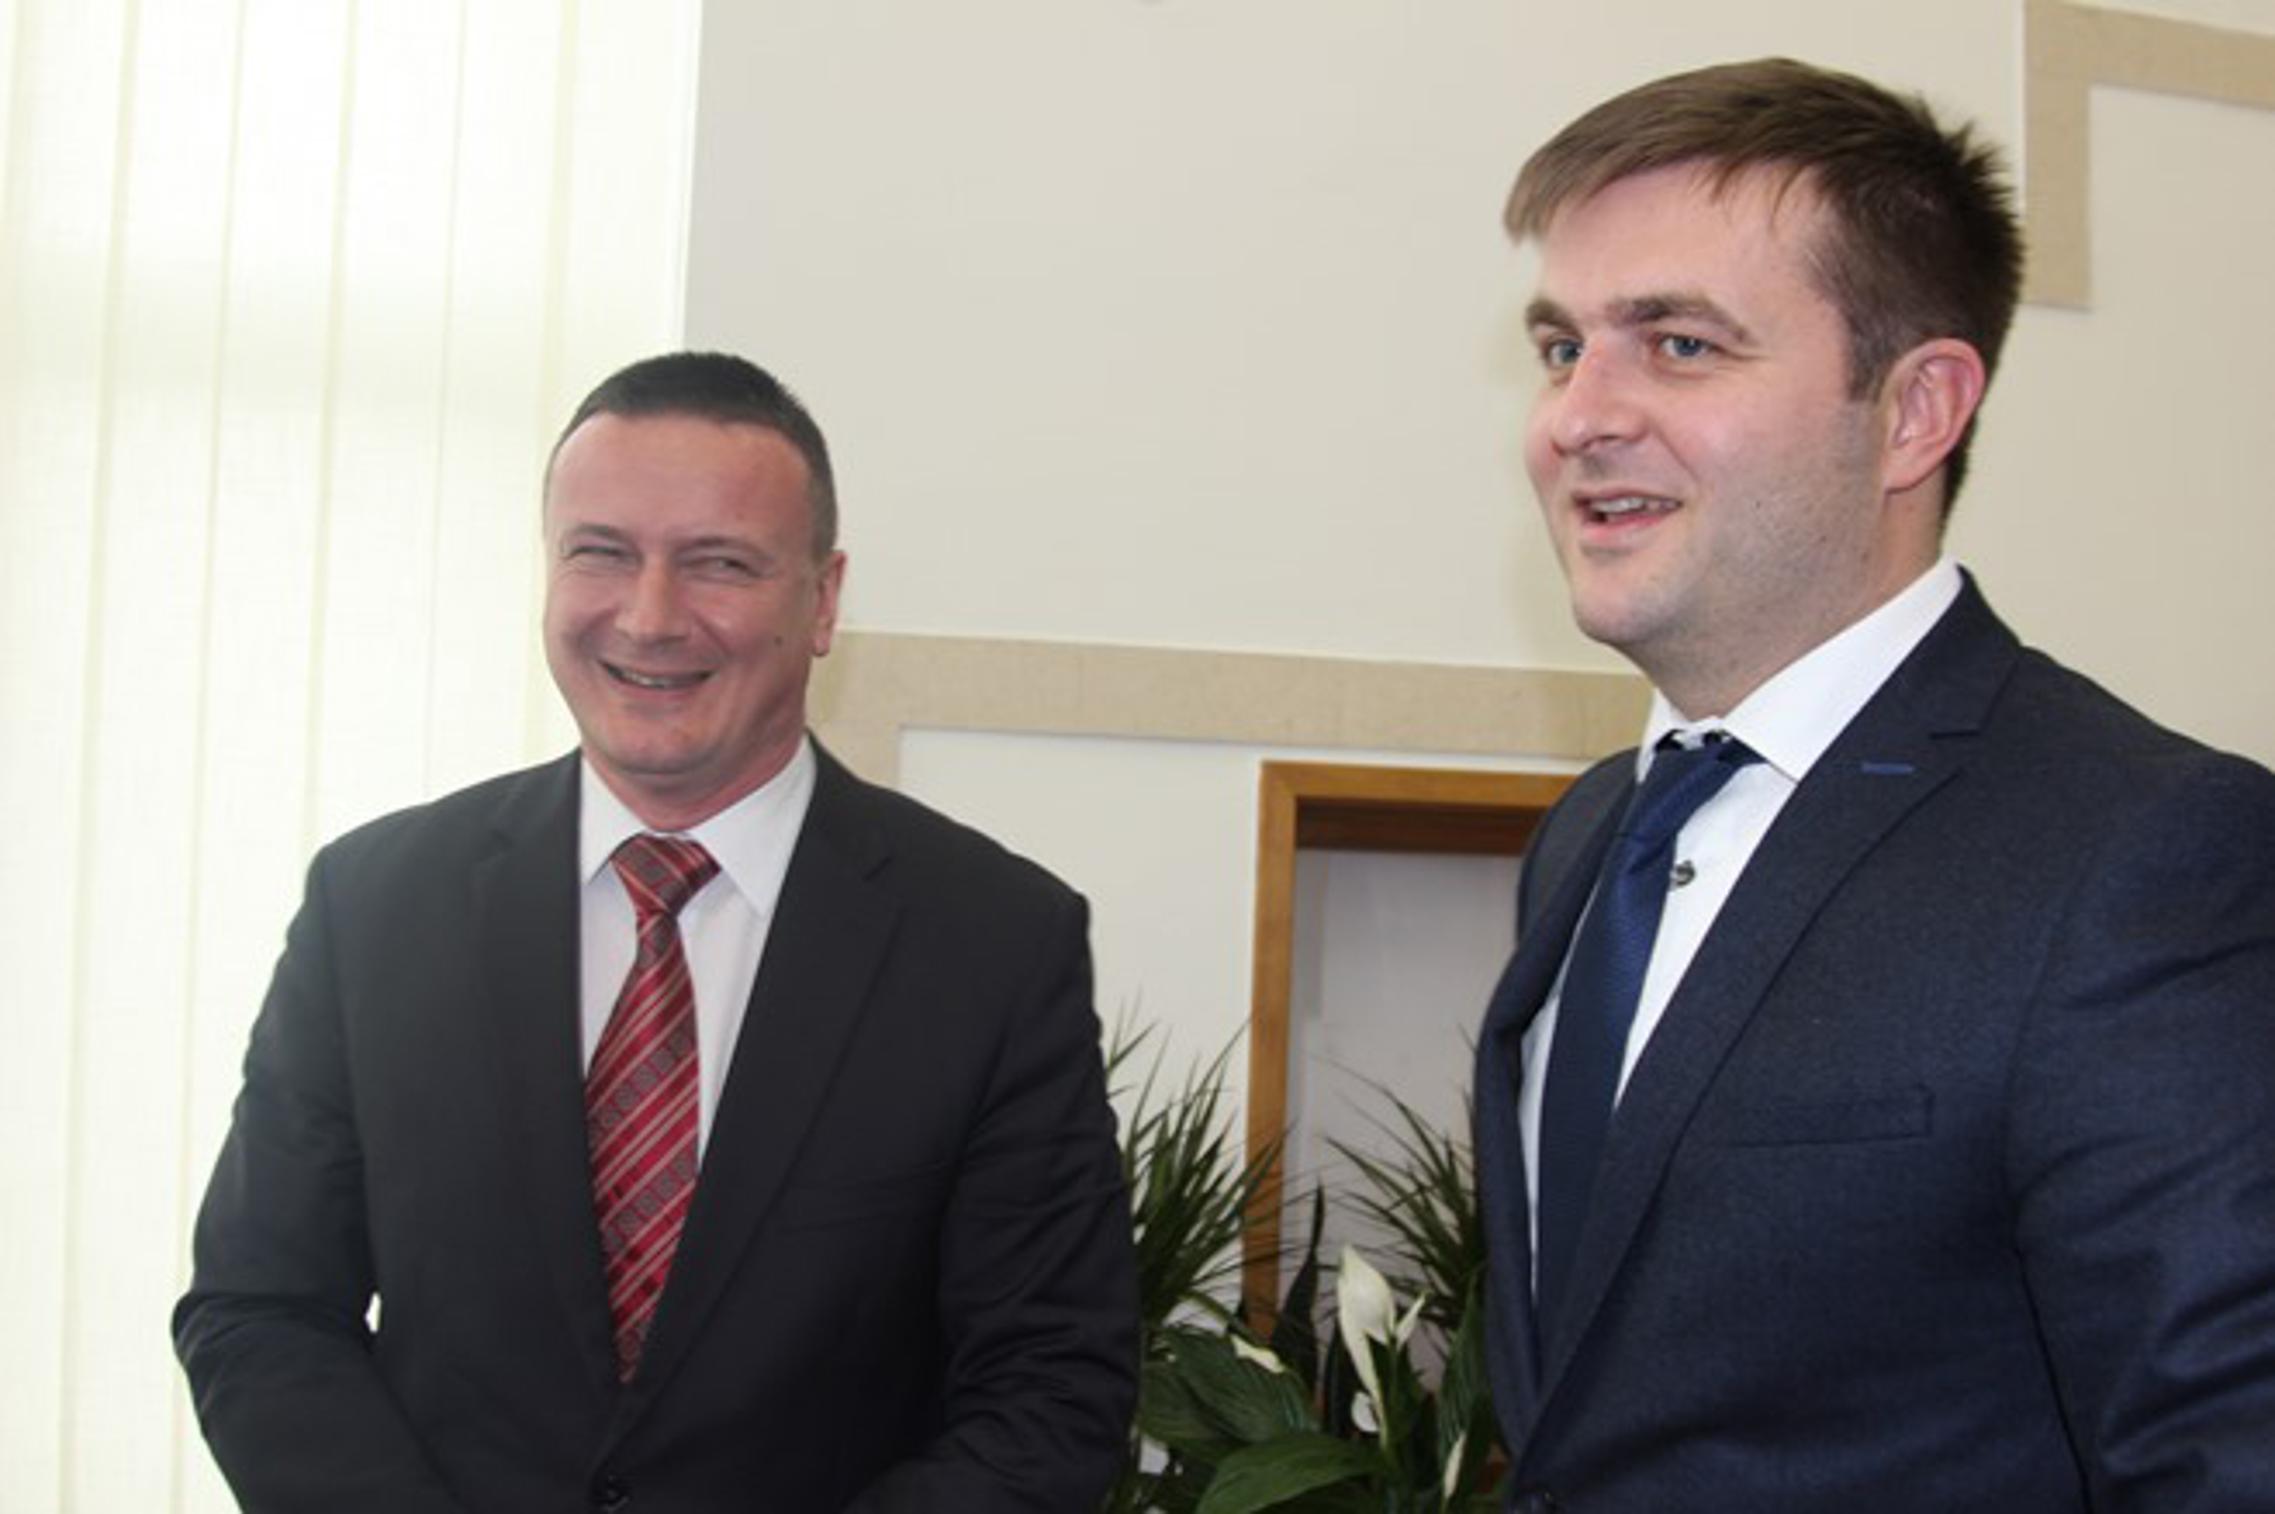 župan Danijel Marušić, ministar Tomislav Ćorić